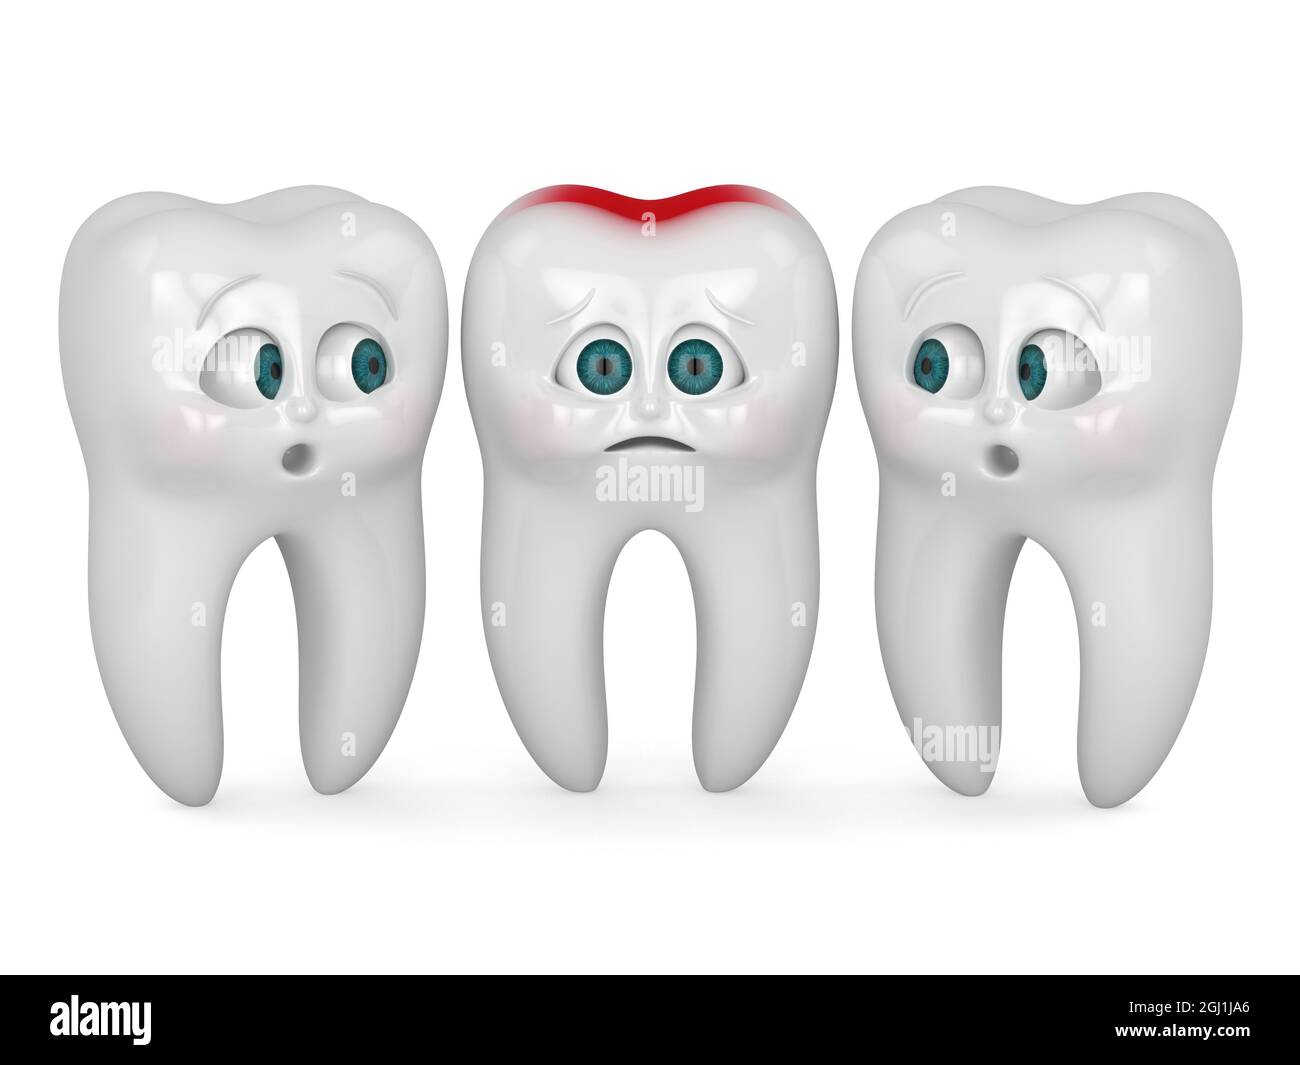 Rendu 3D de la caricature M. Tooth sensation de douleur debout avec des amis isolés sur le backgorund blanc. Concept de dentisterie pédiatrique. Banque D'Images